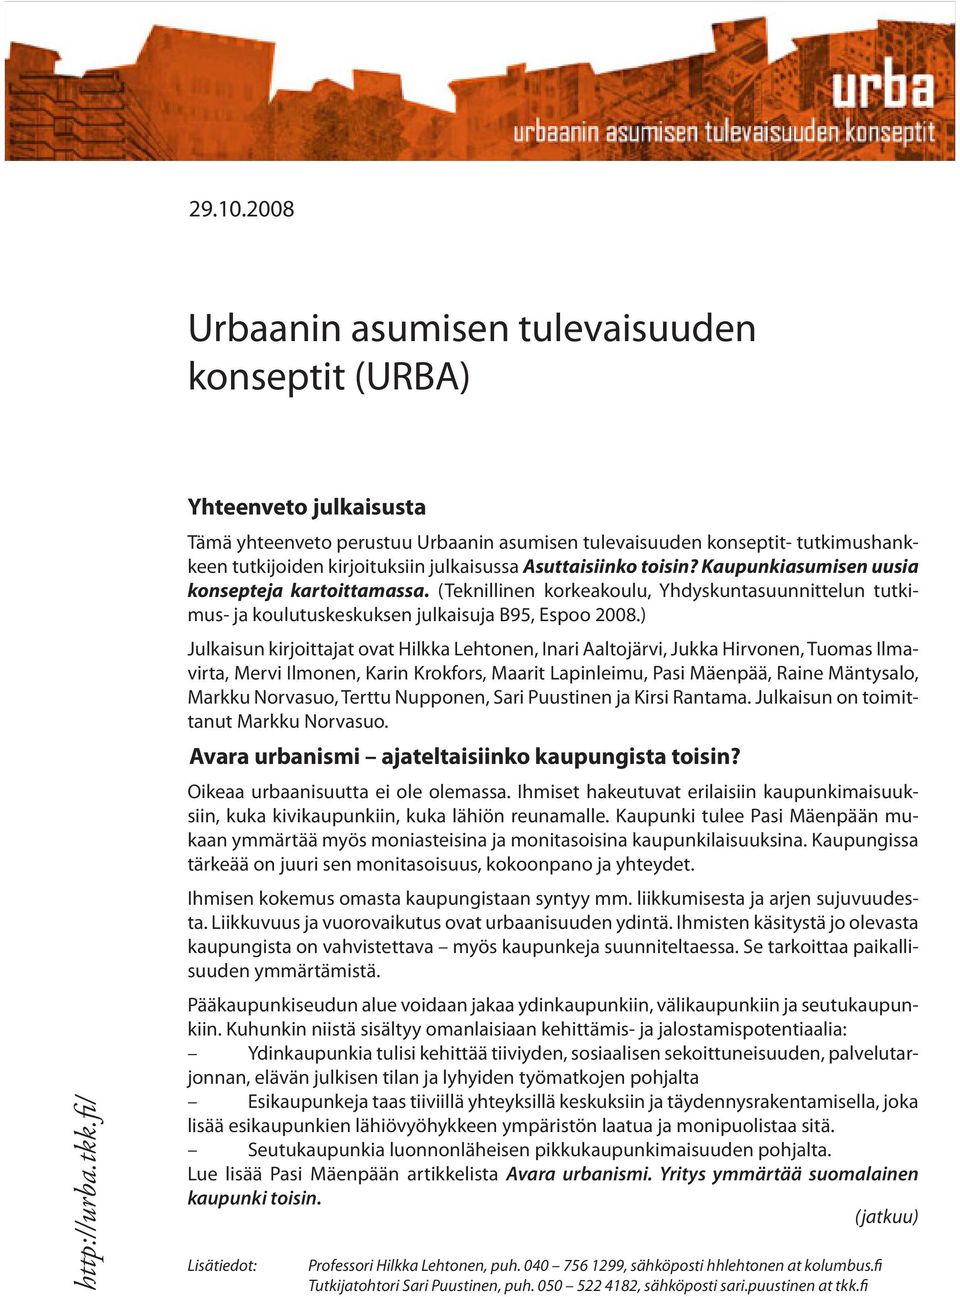 Kaupunkiasumisen uusia konsepteja kartoittamassa. (Teknillinen korkeakoulu, Yhdyskuntasuunnittelun tutkimus- ja koulutuskeskuksen julkaisuja B95, Espoo 2008.